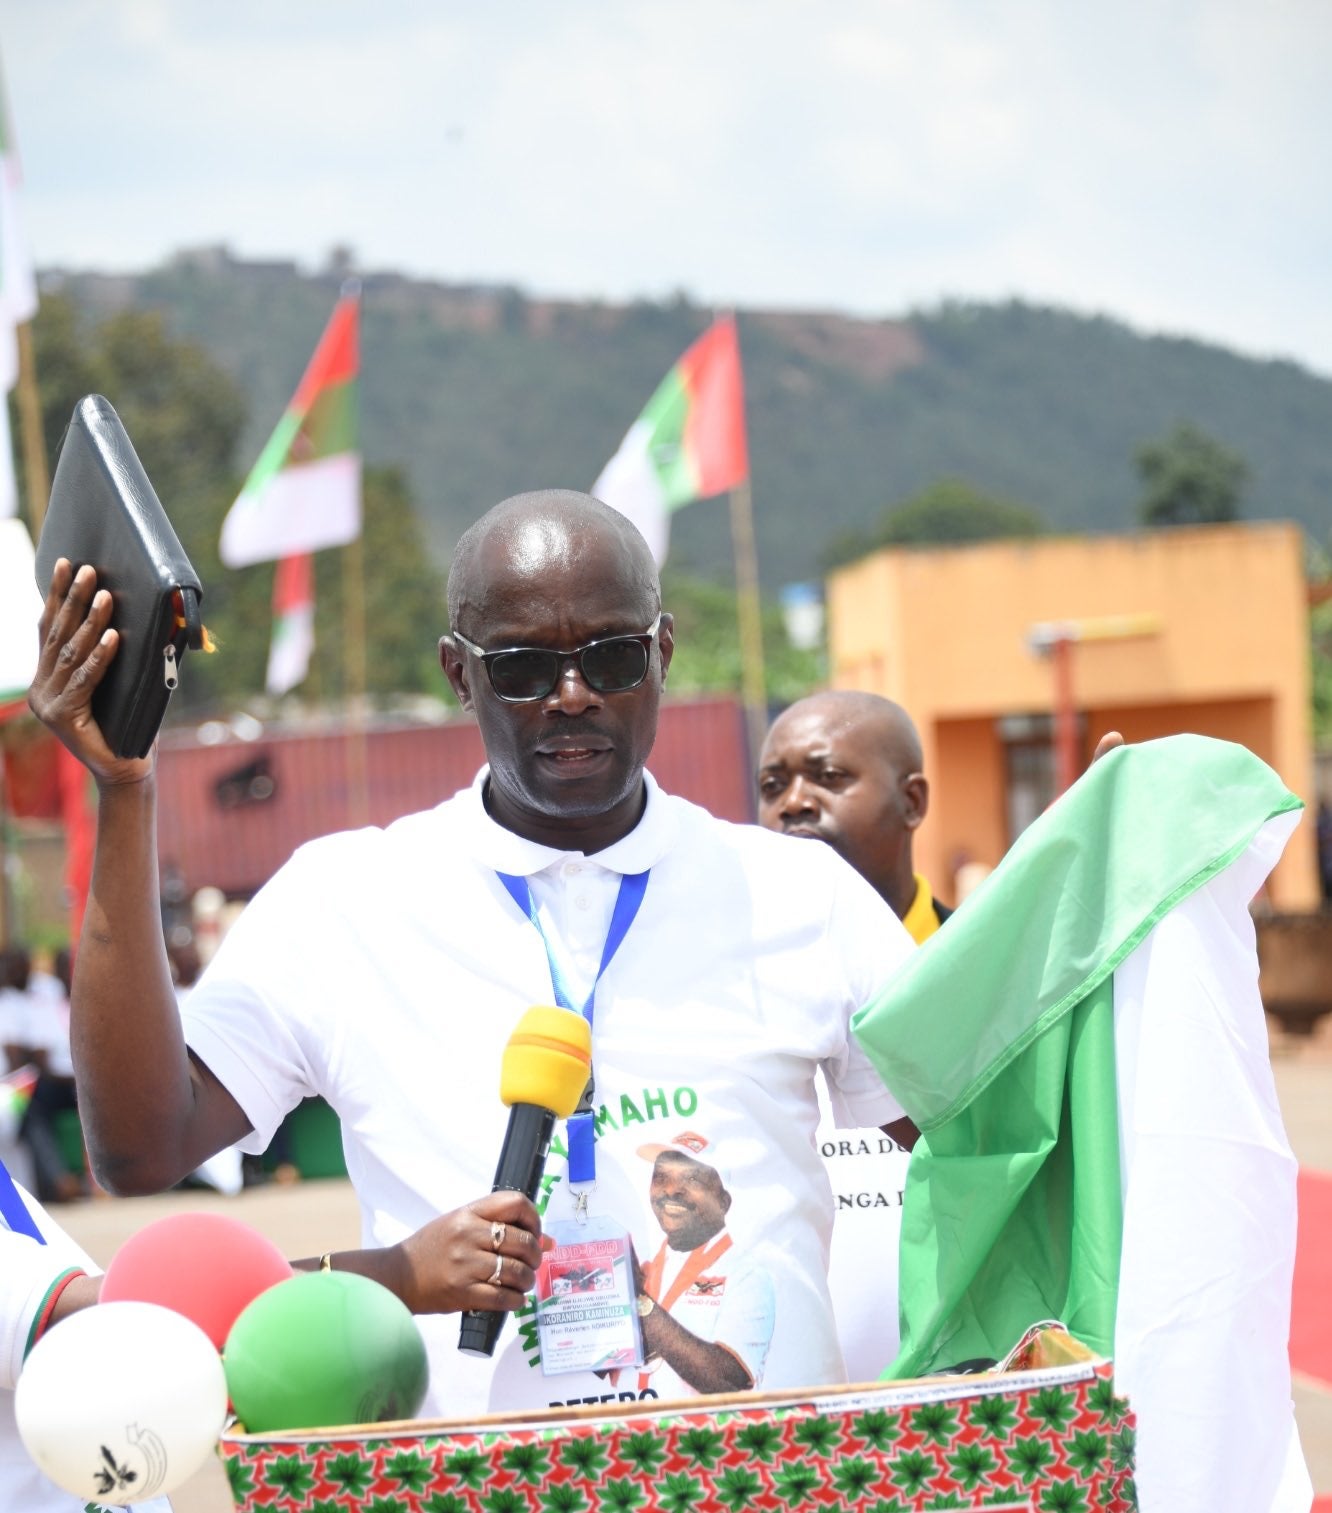 Révérien Ndikuriyo le jour de son élection au poste de secrétaire général du parti au pouvoir au Burundi, à Gitega, le 24 janvier 2021.